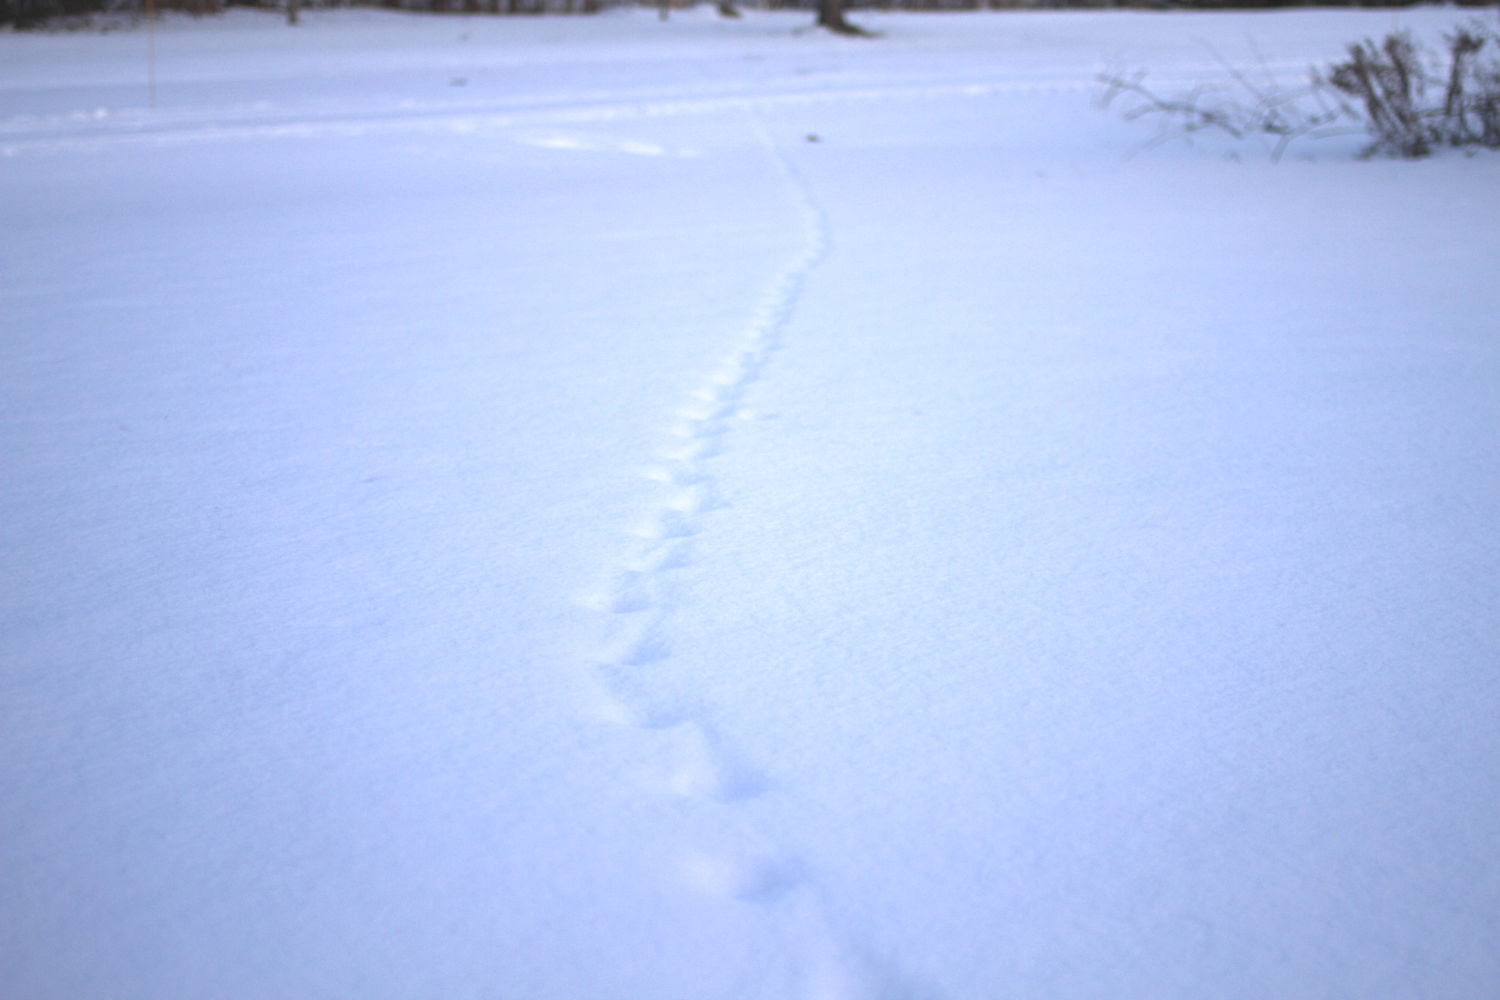 Des traces de renard dans la neige. On sait qu’il s’agit d’un renard car on peut voir le frottement de la queue.